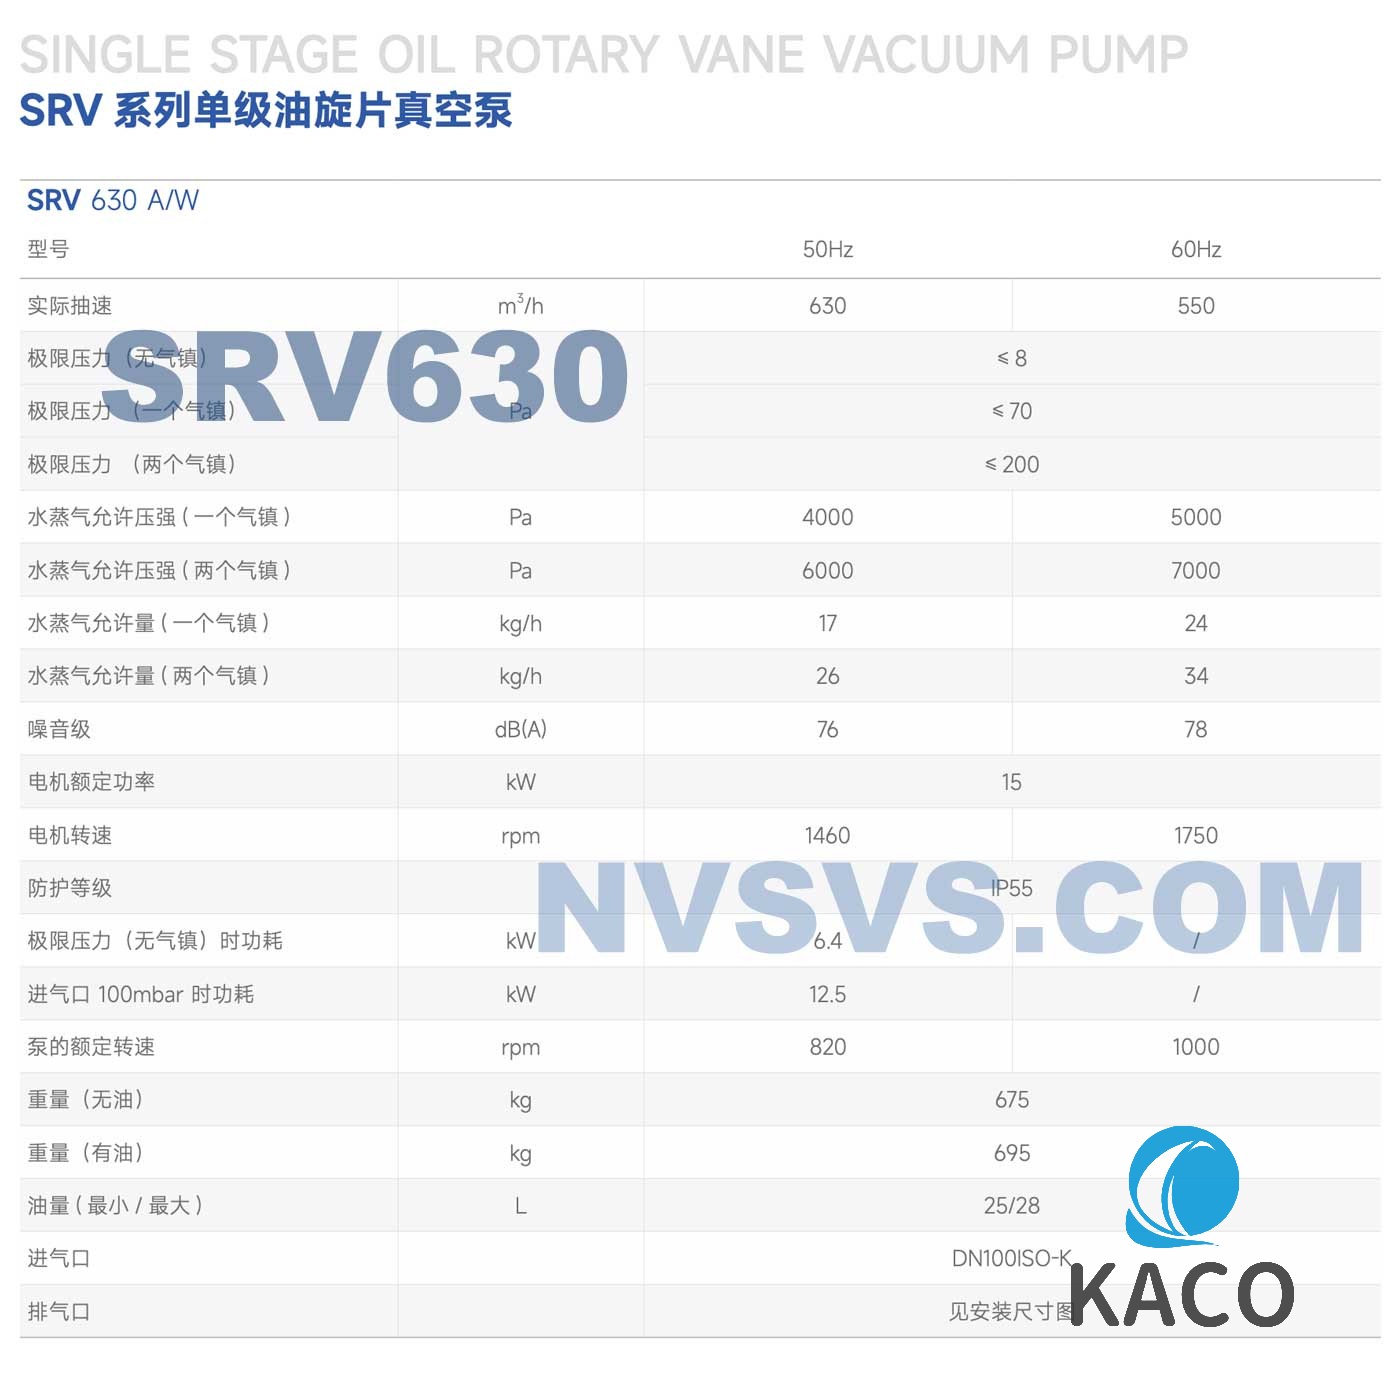 鲍斯真空泵SRV630A风冷单级油旋片泵主要性能指标